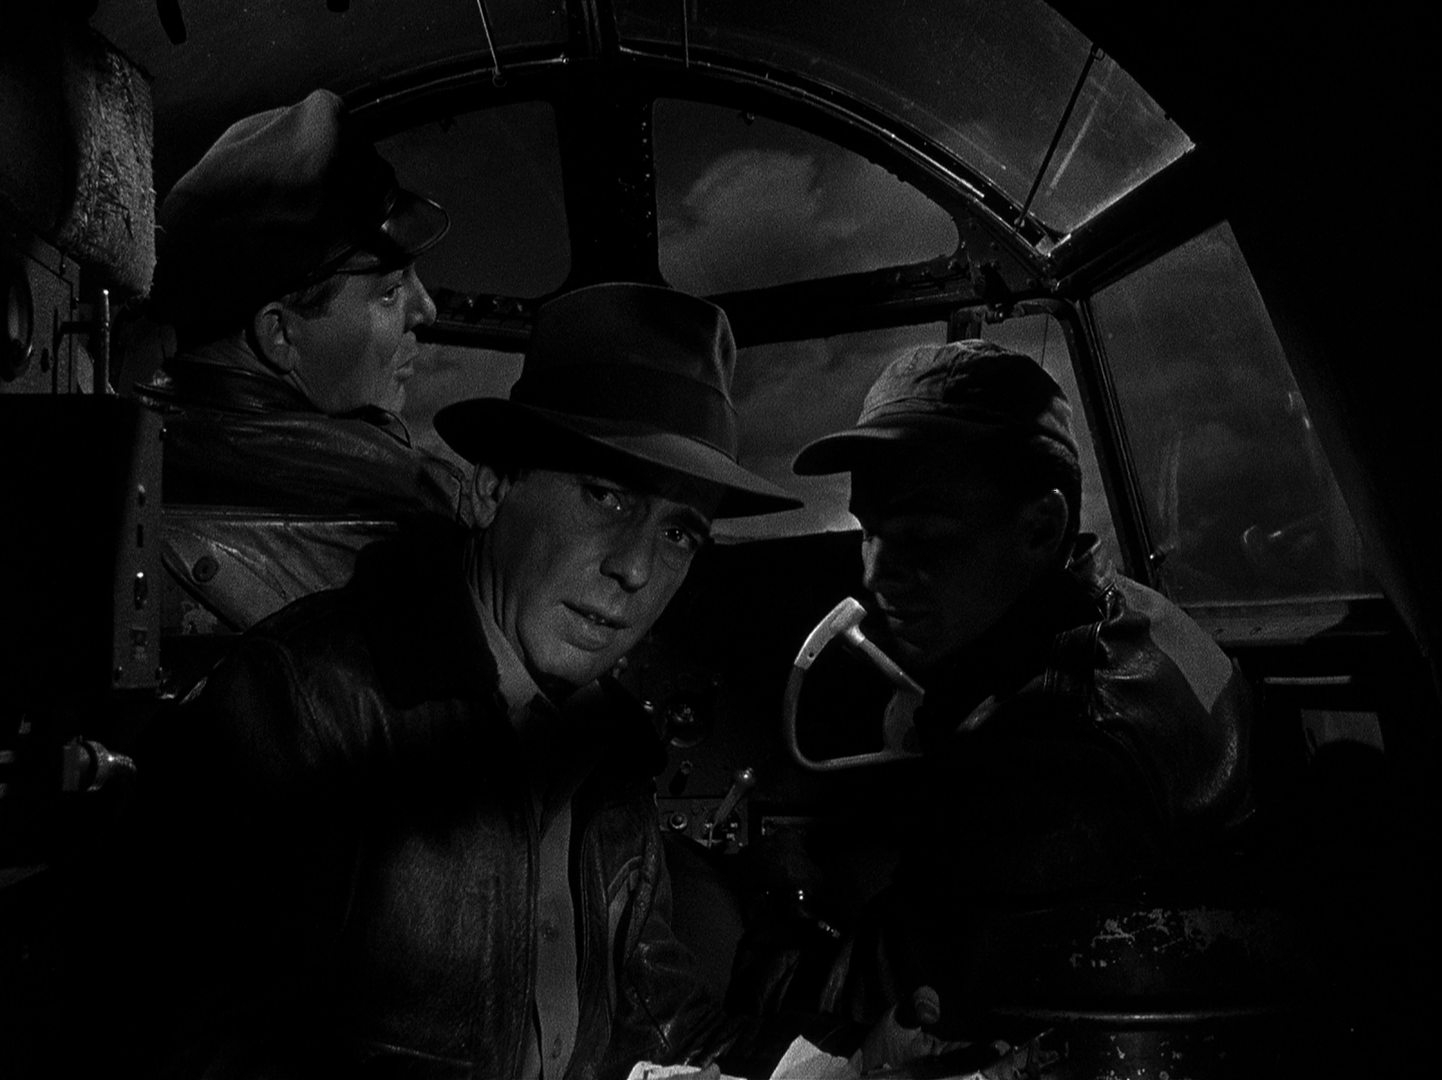 Schwarz-Weiß-Szene mit nächtlichem Blick ins Cockpit einer Frachtmaschine: Humphrey Bogart als Joe Barrett in einer Indiana-Jones-ähnlichen Kleidung im Beisein der beiden Piloten.